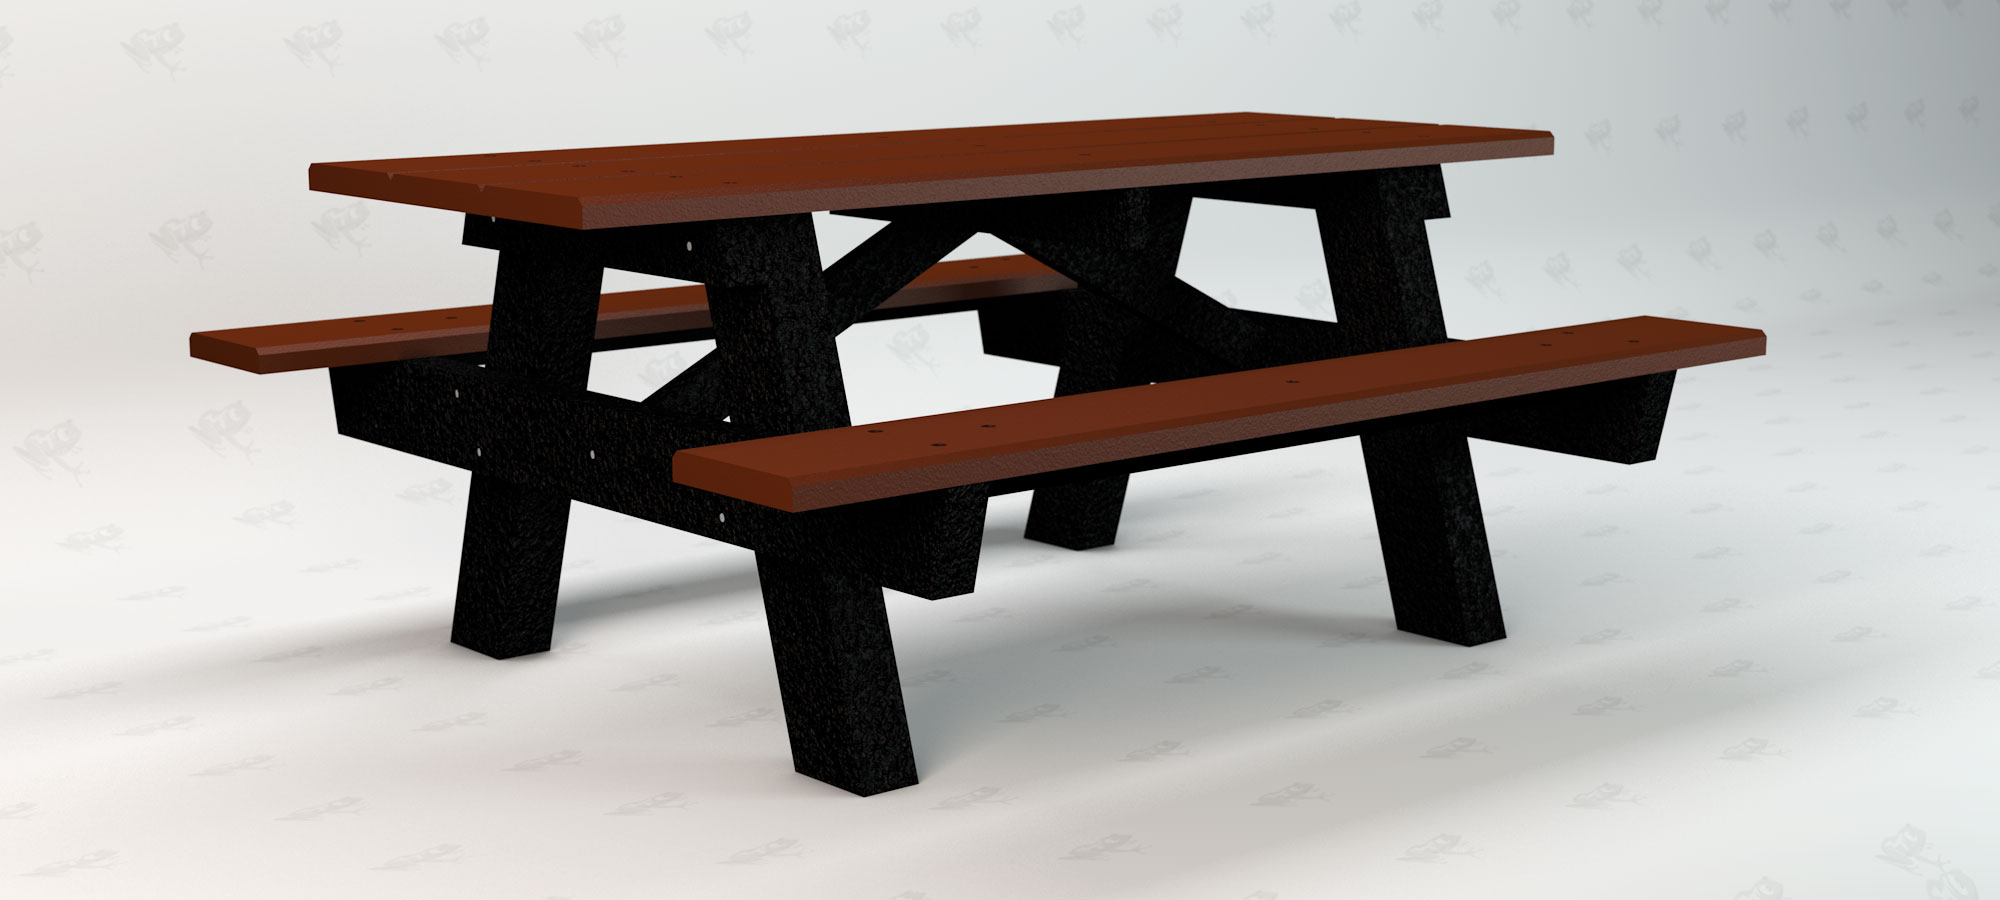 A Frame Table Left